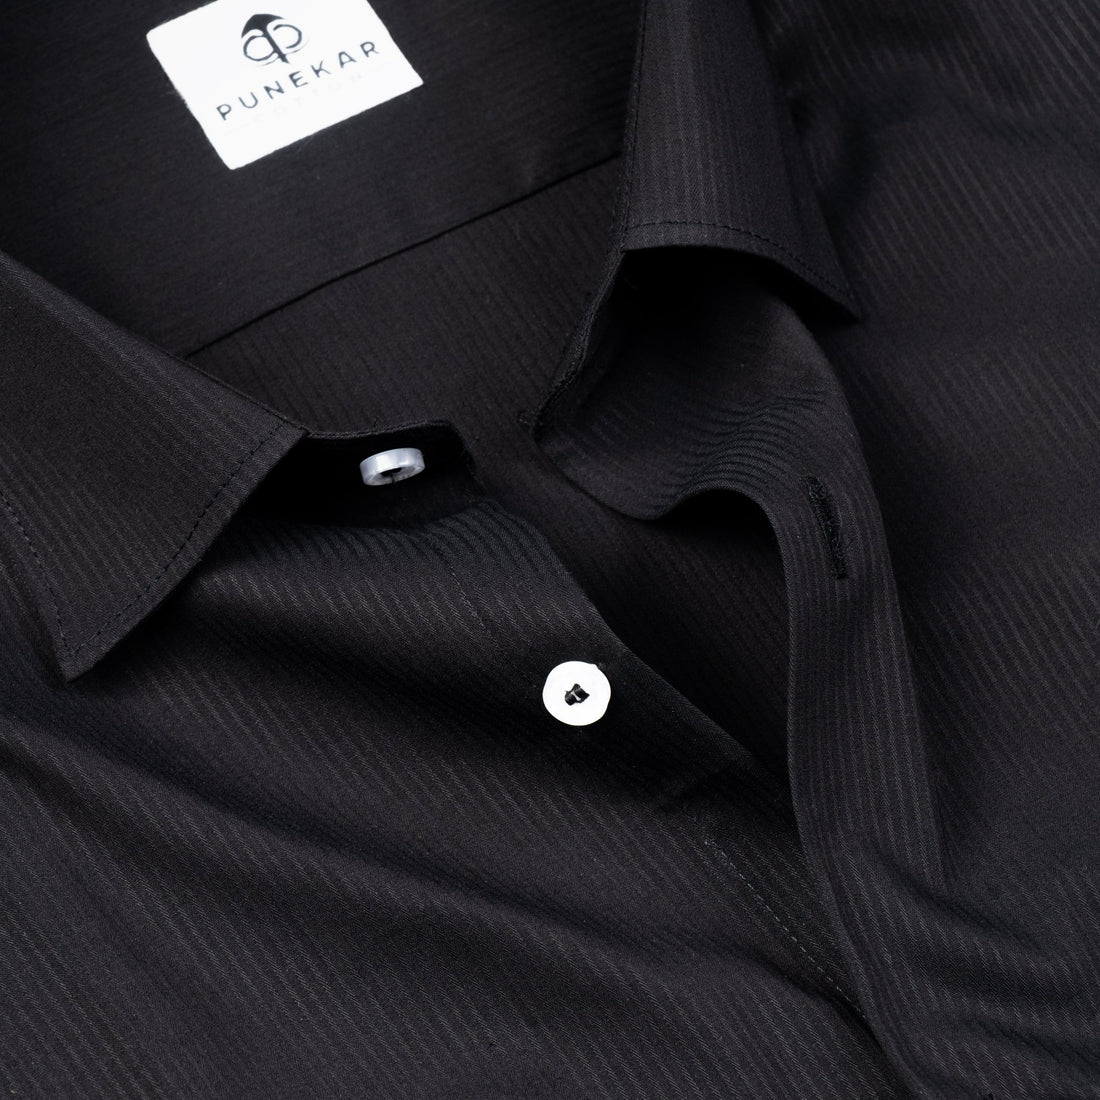 Black Color Lining Texture Lycra Cotton Shirt For Men - Punekar Cotton